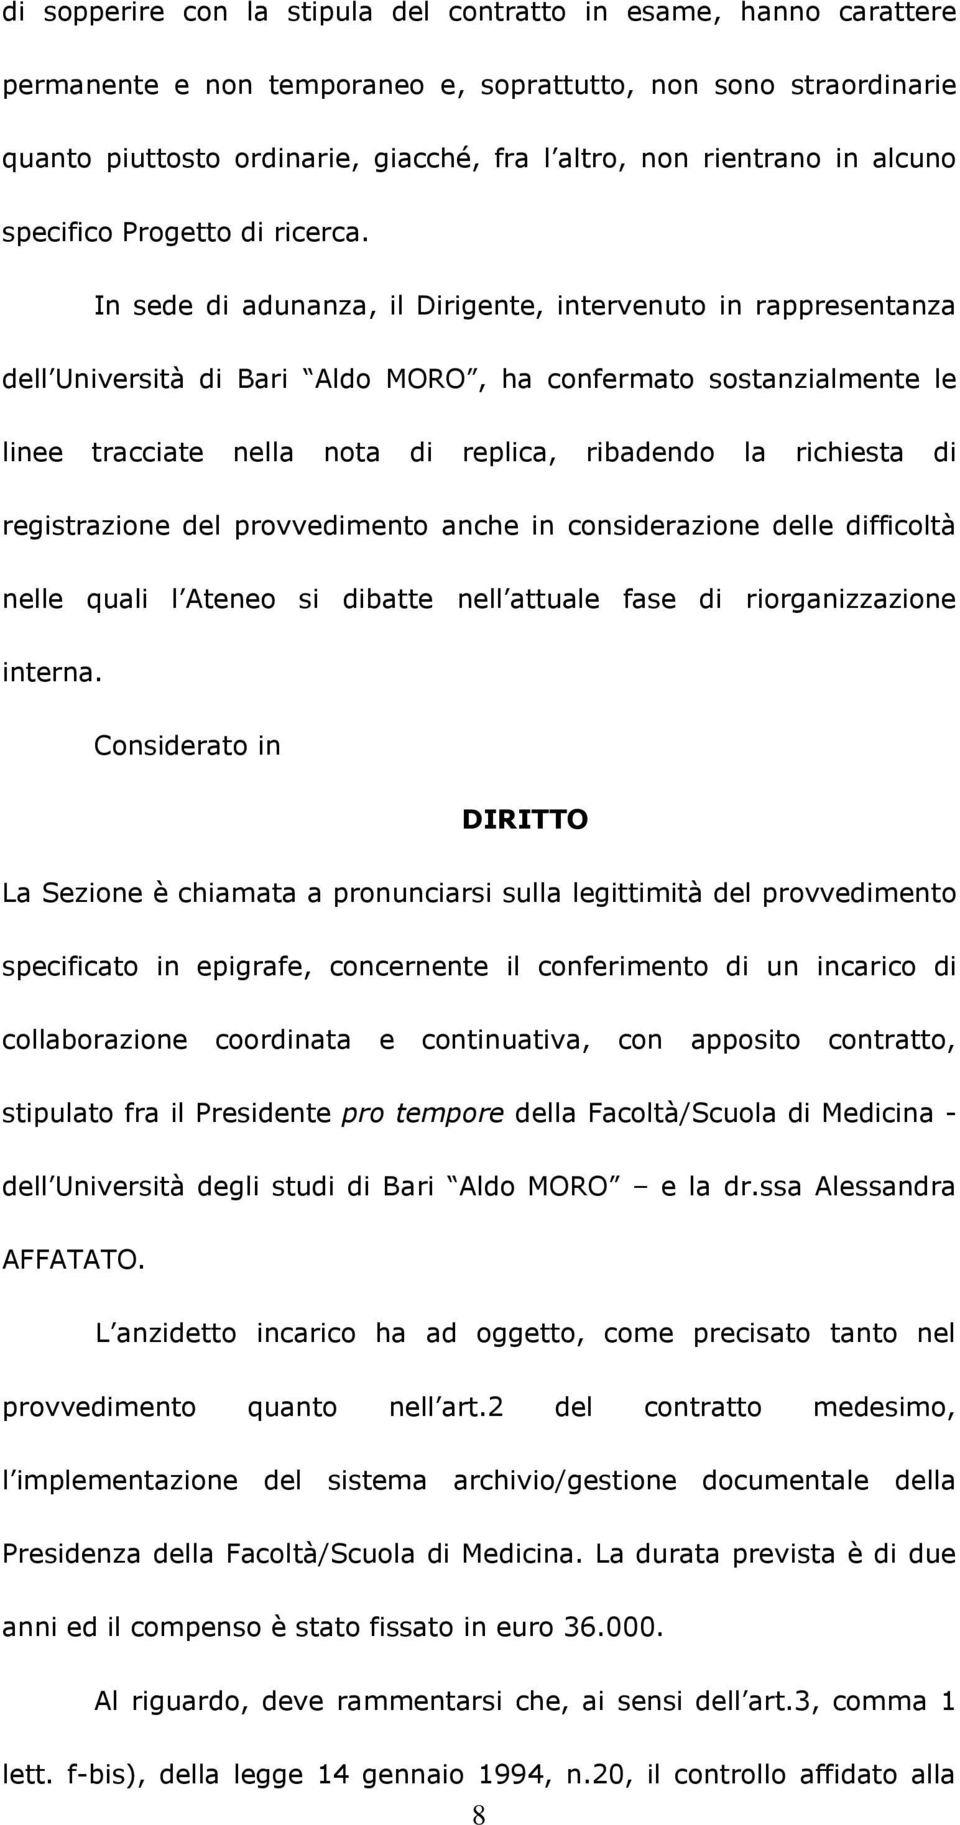 In sede di adunanza, il Dirigente, intervenuto in rappresentanza dell Università di Bari Aldo MORO, ha confermato sostanzialmente le linee tracciate nella nota di replica, ribadendo la richiesta di